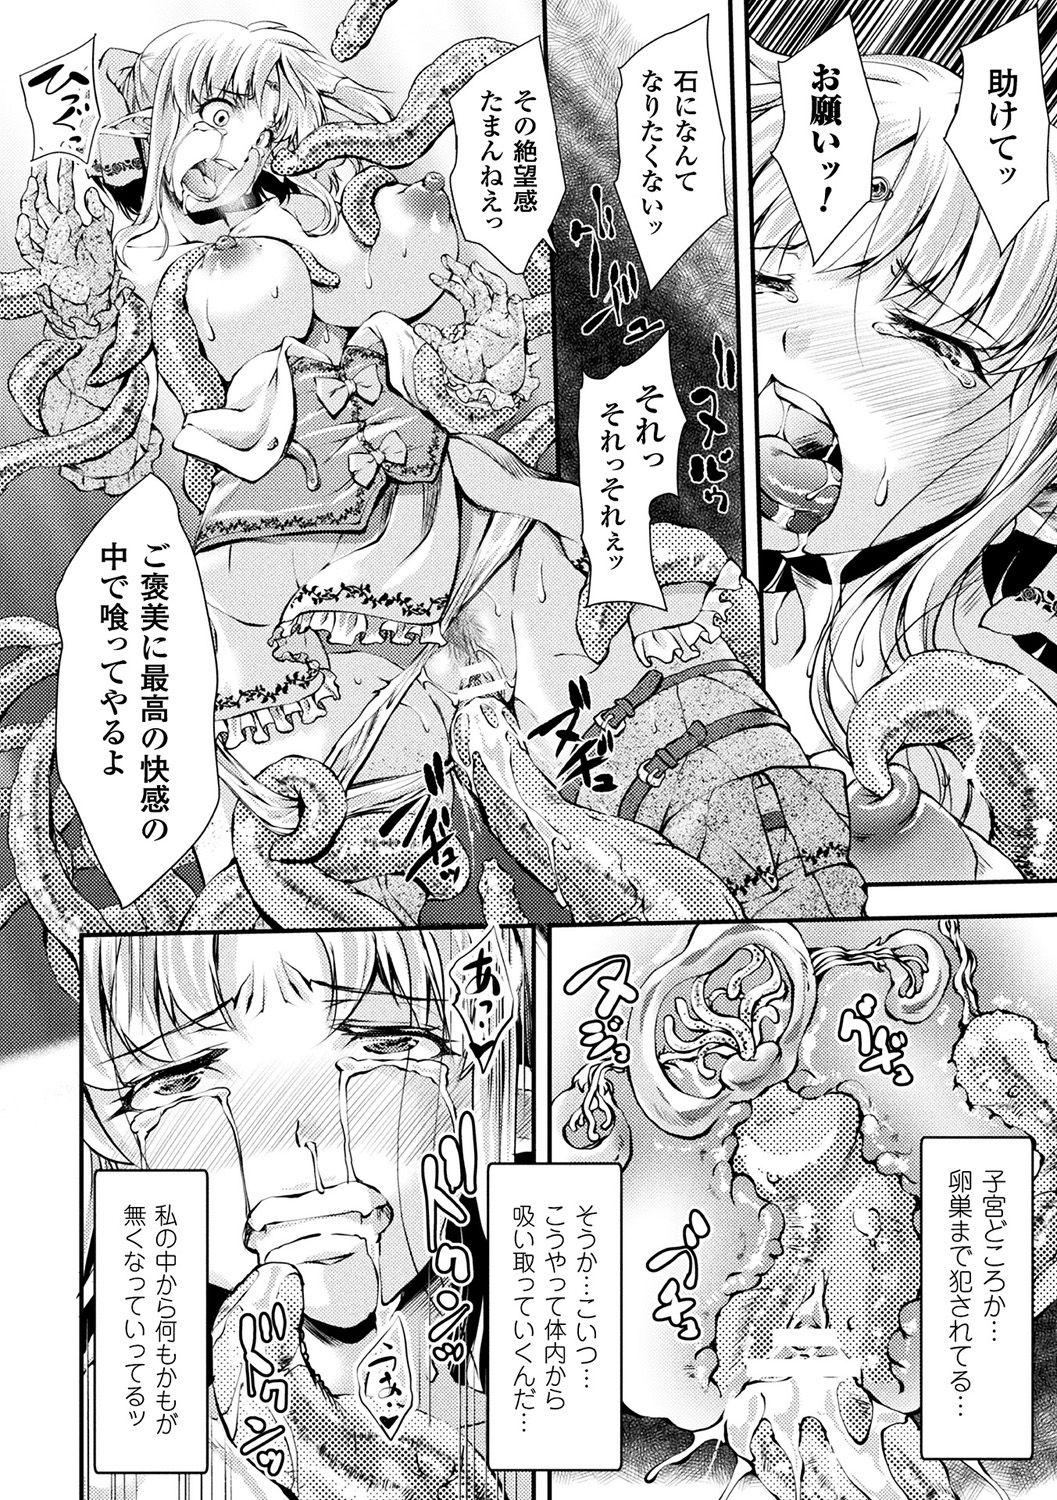 [Anthology] Bessatsu Comic Unreal Sekka END ~Zetsubou no Naka de Sekizou e to Kaerareru Shoujo-tachi~ Vol. 2 [Digital] 29